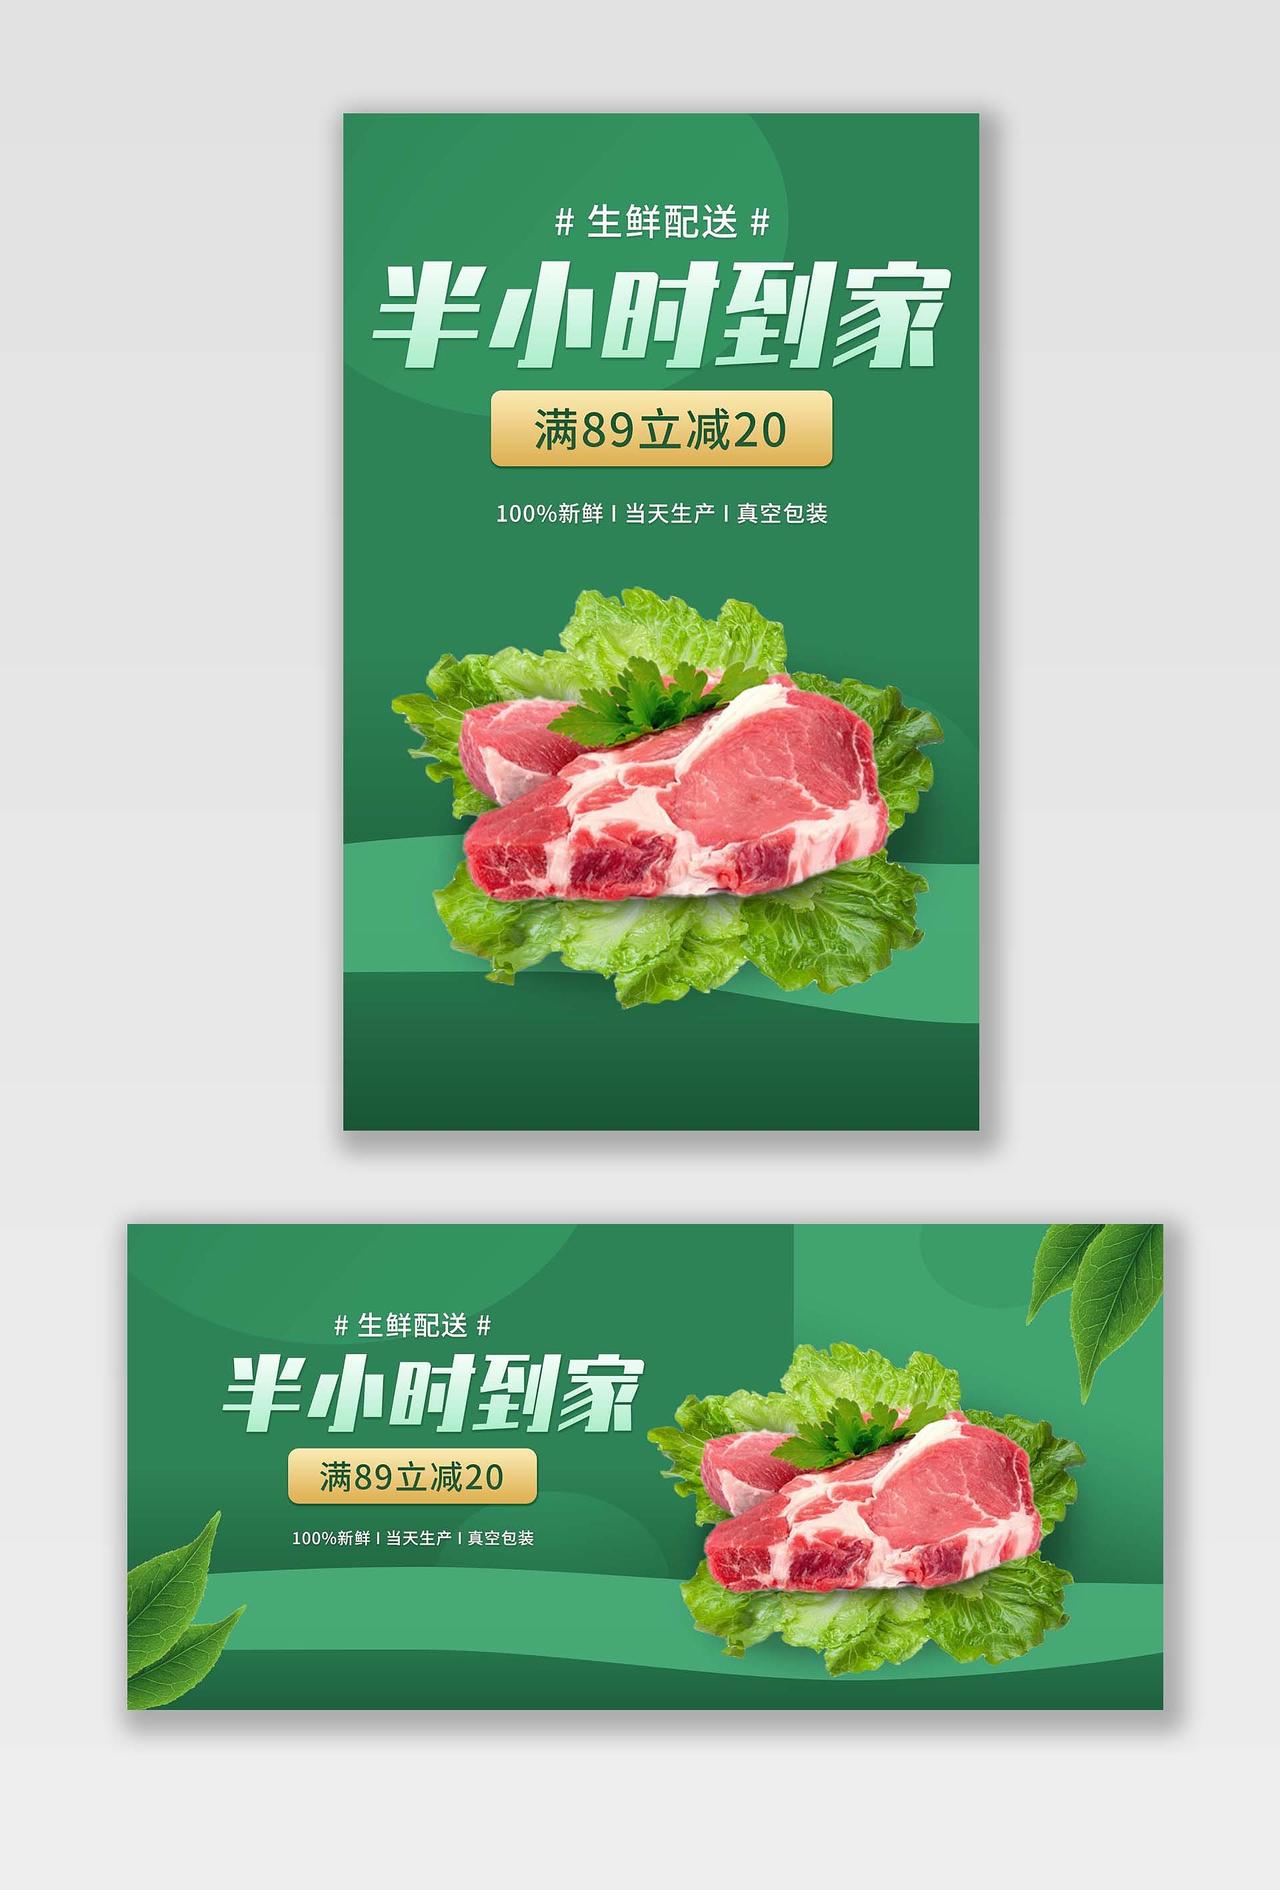 绿色平面风格生鲜配送猪肉活动优惠半小时到家生鲜配送猪肉banner